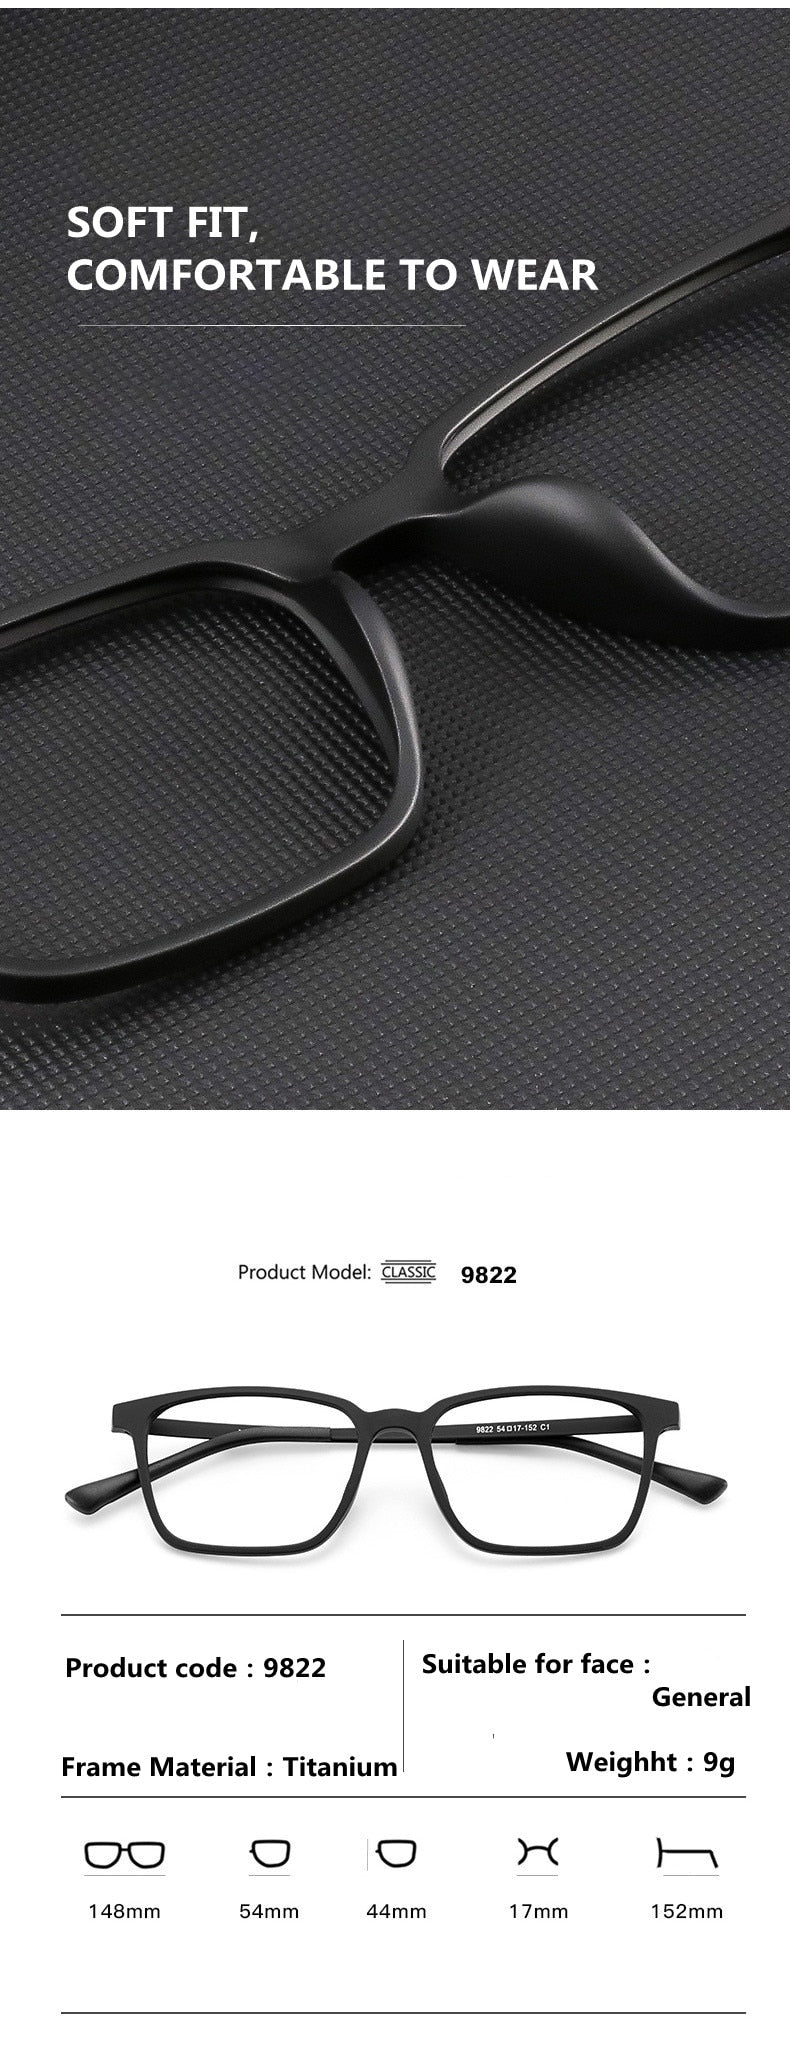 Handoer Unisex Full Rim Square Tr 90 Titanium Hyperopic Photochromic +175 To +325 Reading Glasses 9822-1 Reading Glasses Handoer   